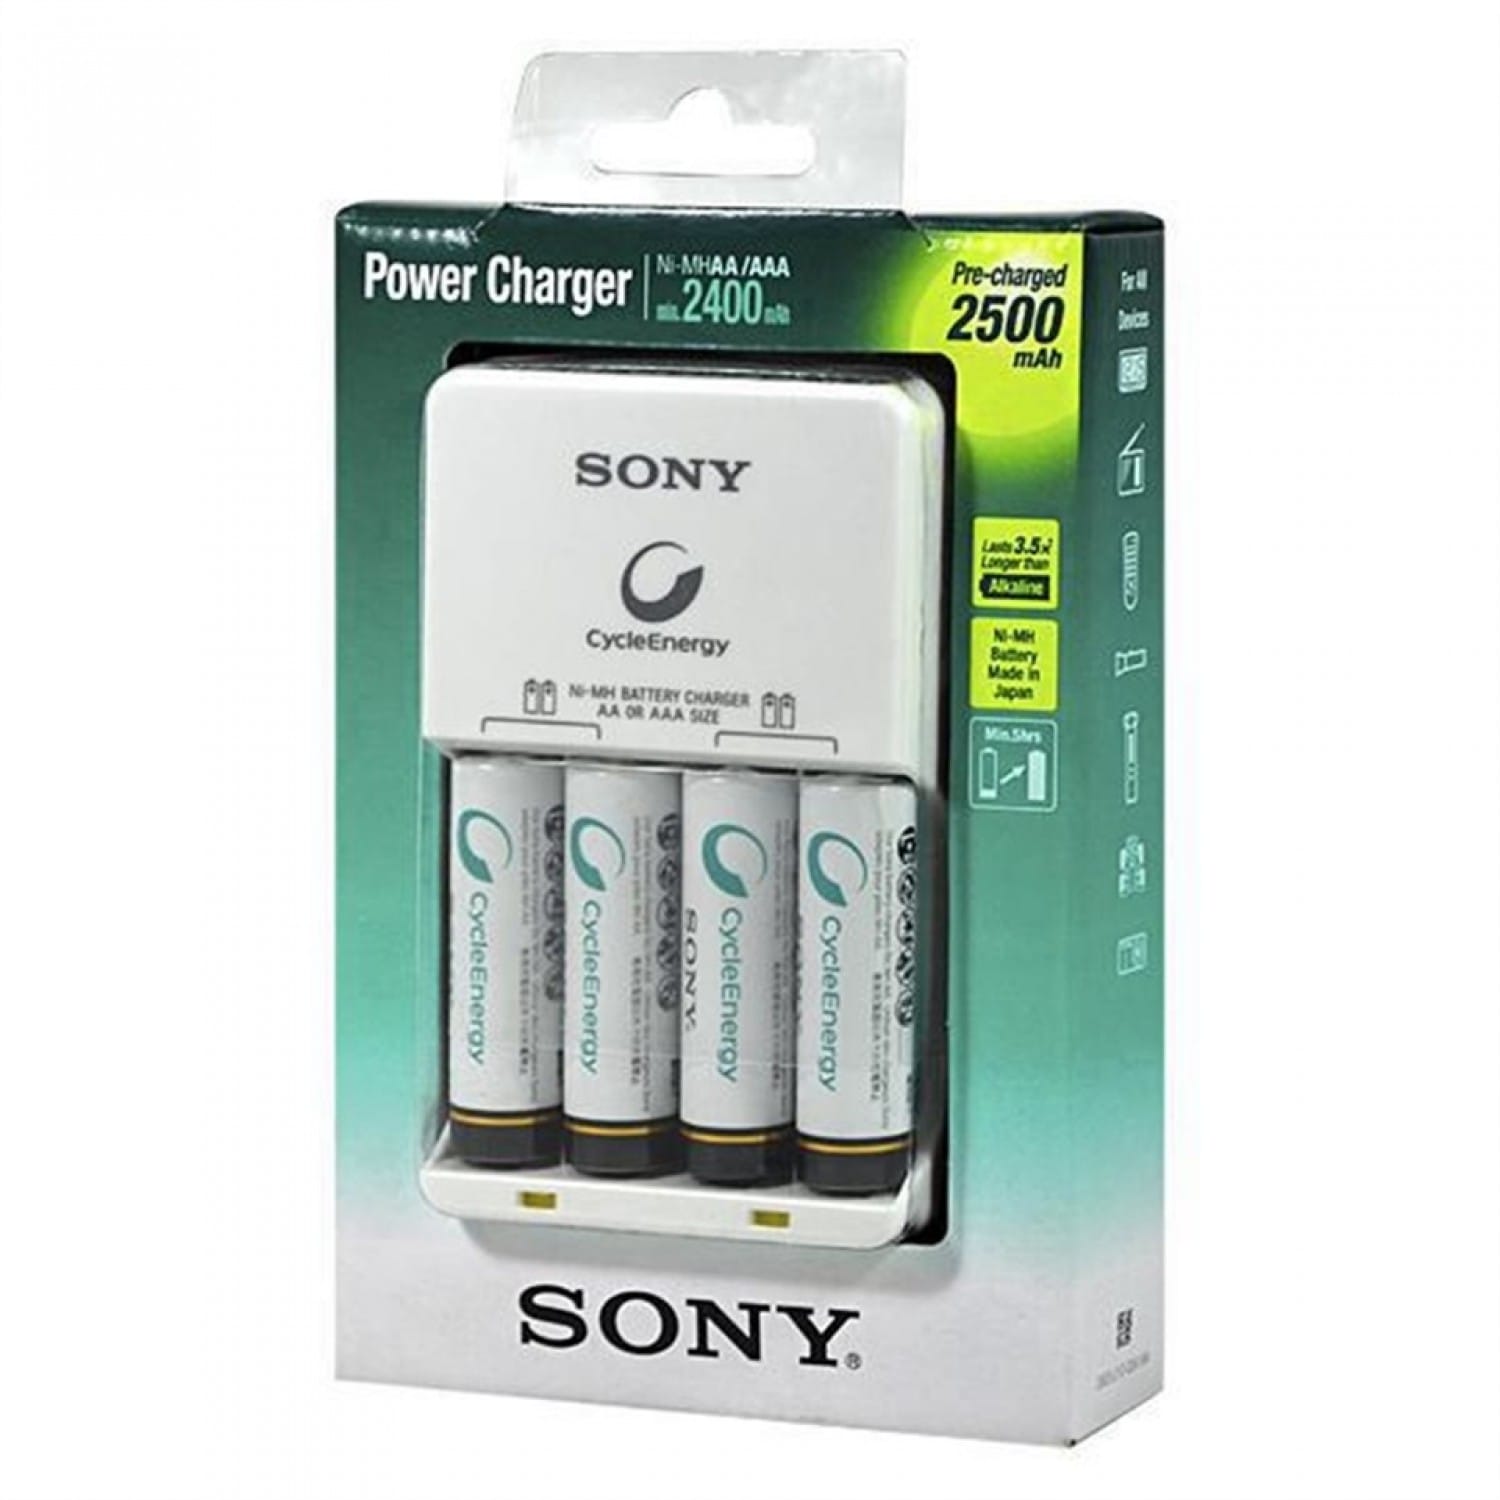 Chargeur SONY compact + 4 piles LR6 NiMH de 2500mAh (Recharge 4